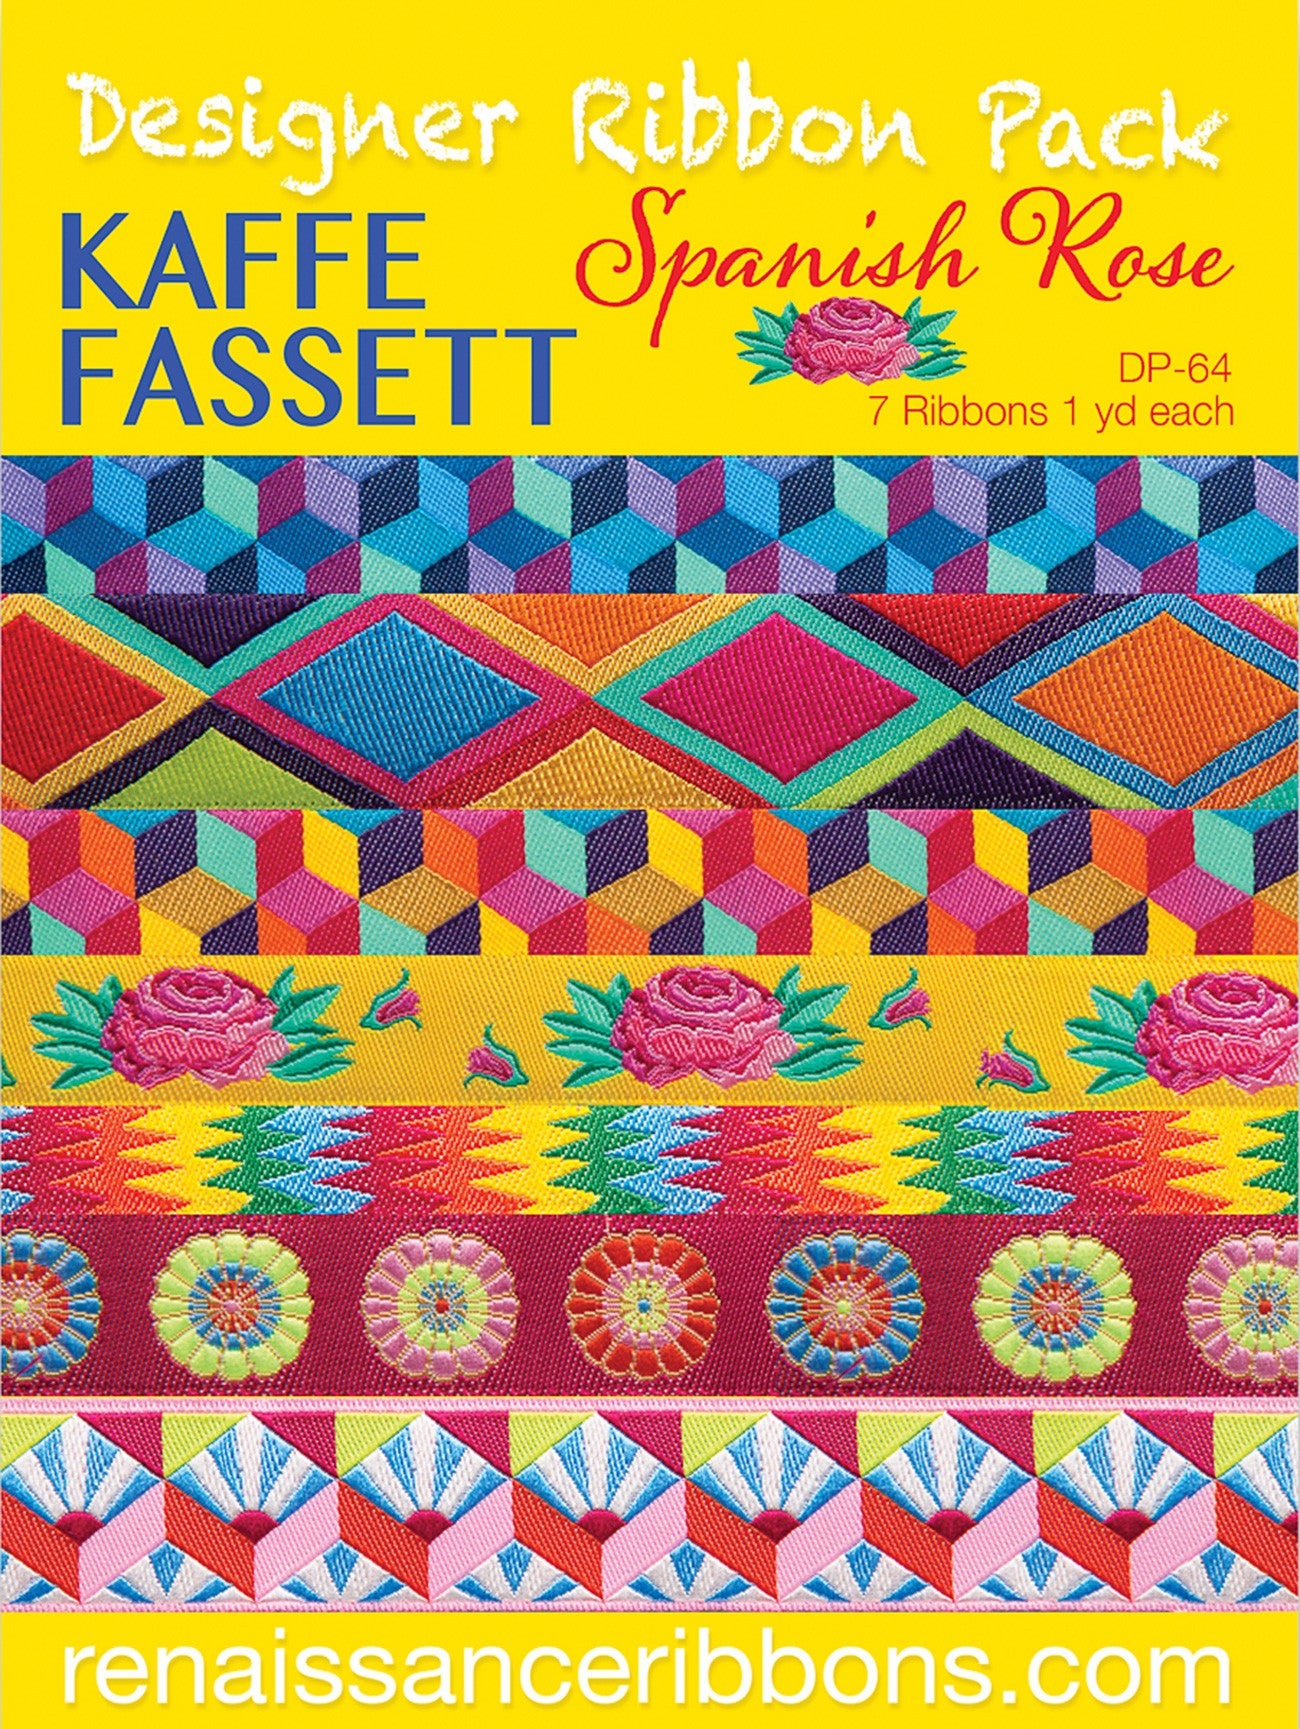 Spanish Rose Designer Ribbon Pack by Kaffe Fassett for Renaissance Ribbons